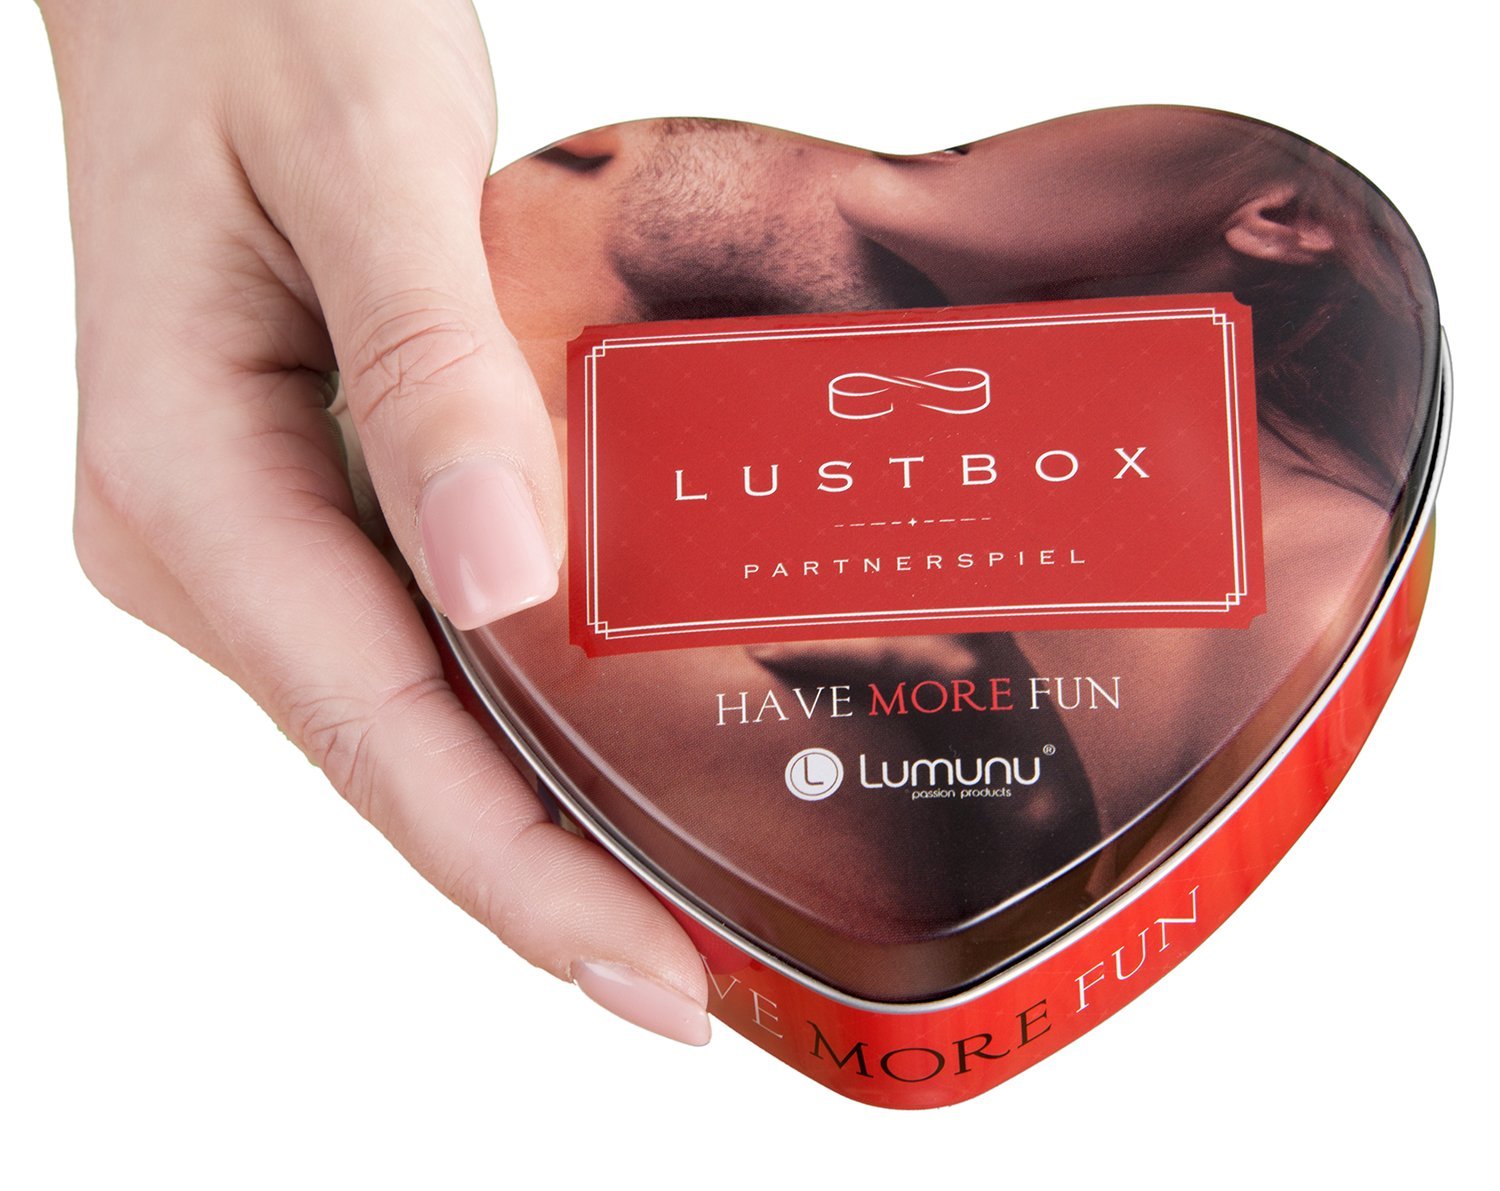 Deluxe Lumunu Liebesspiel "Lustbox". Slide 2